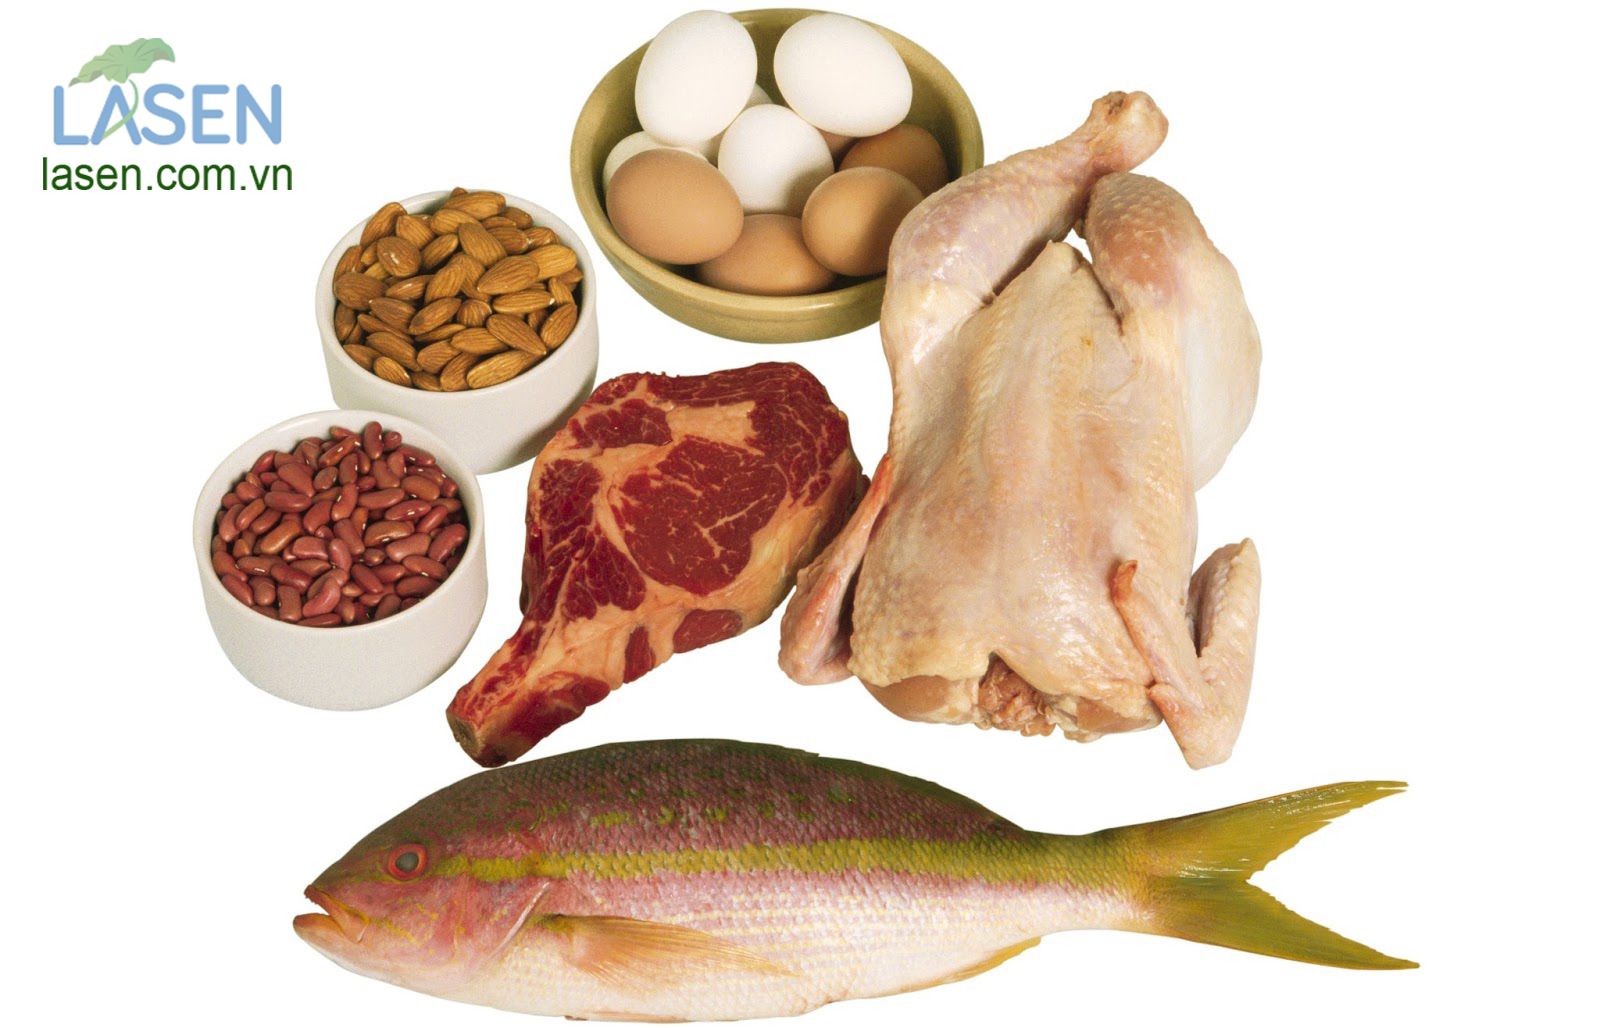 Thực phẩm bổ sung Protein giúp tăng kích thước vòng 1